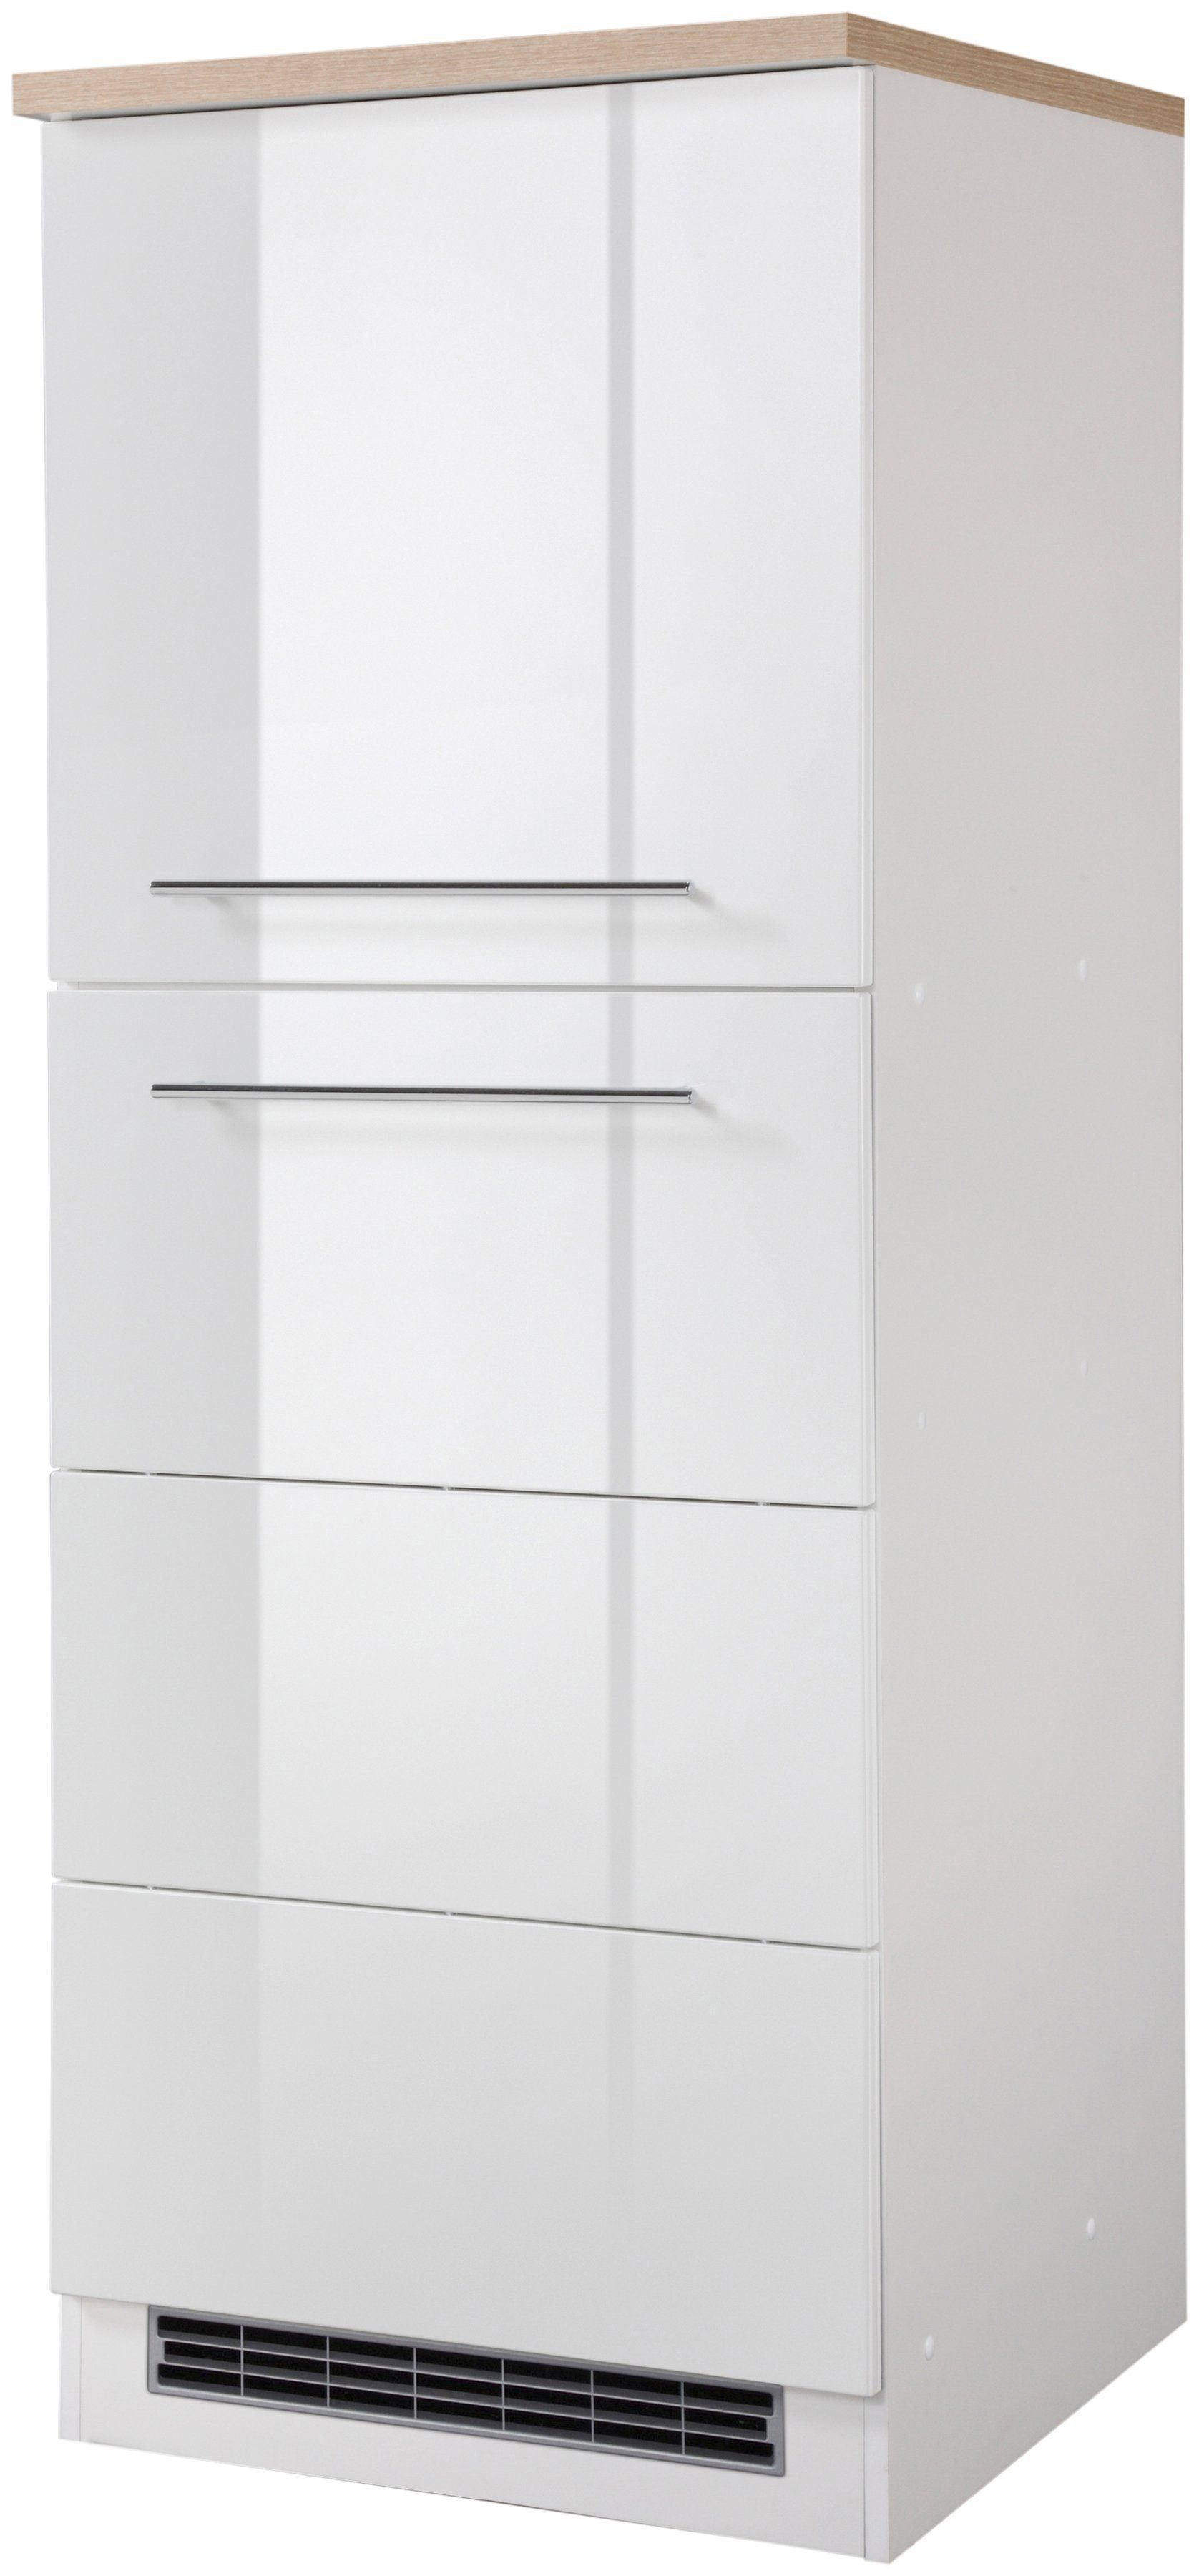 HELD MÖBEL Kühlumbauschrank Wien 60 cm breit, für Einbaukühlschrank weiß Hochglanz | weiß | Umbauschränke